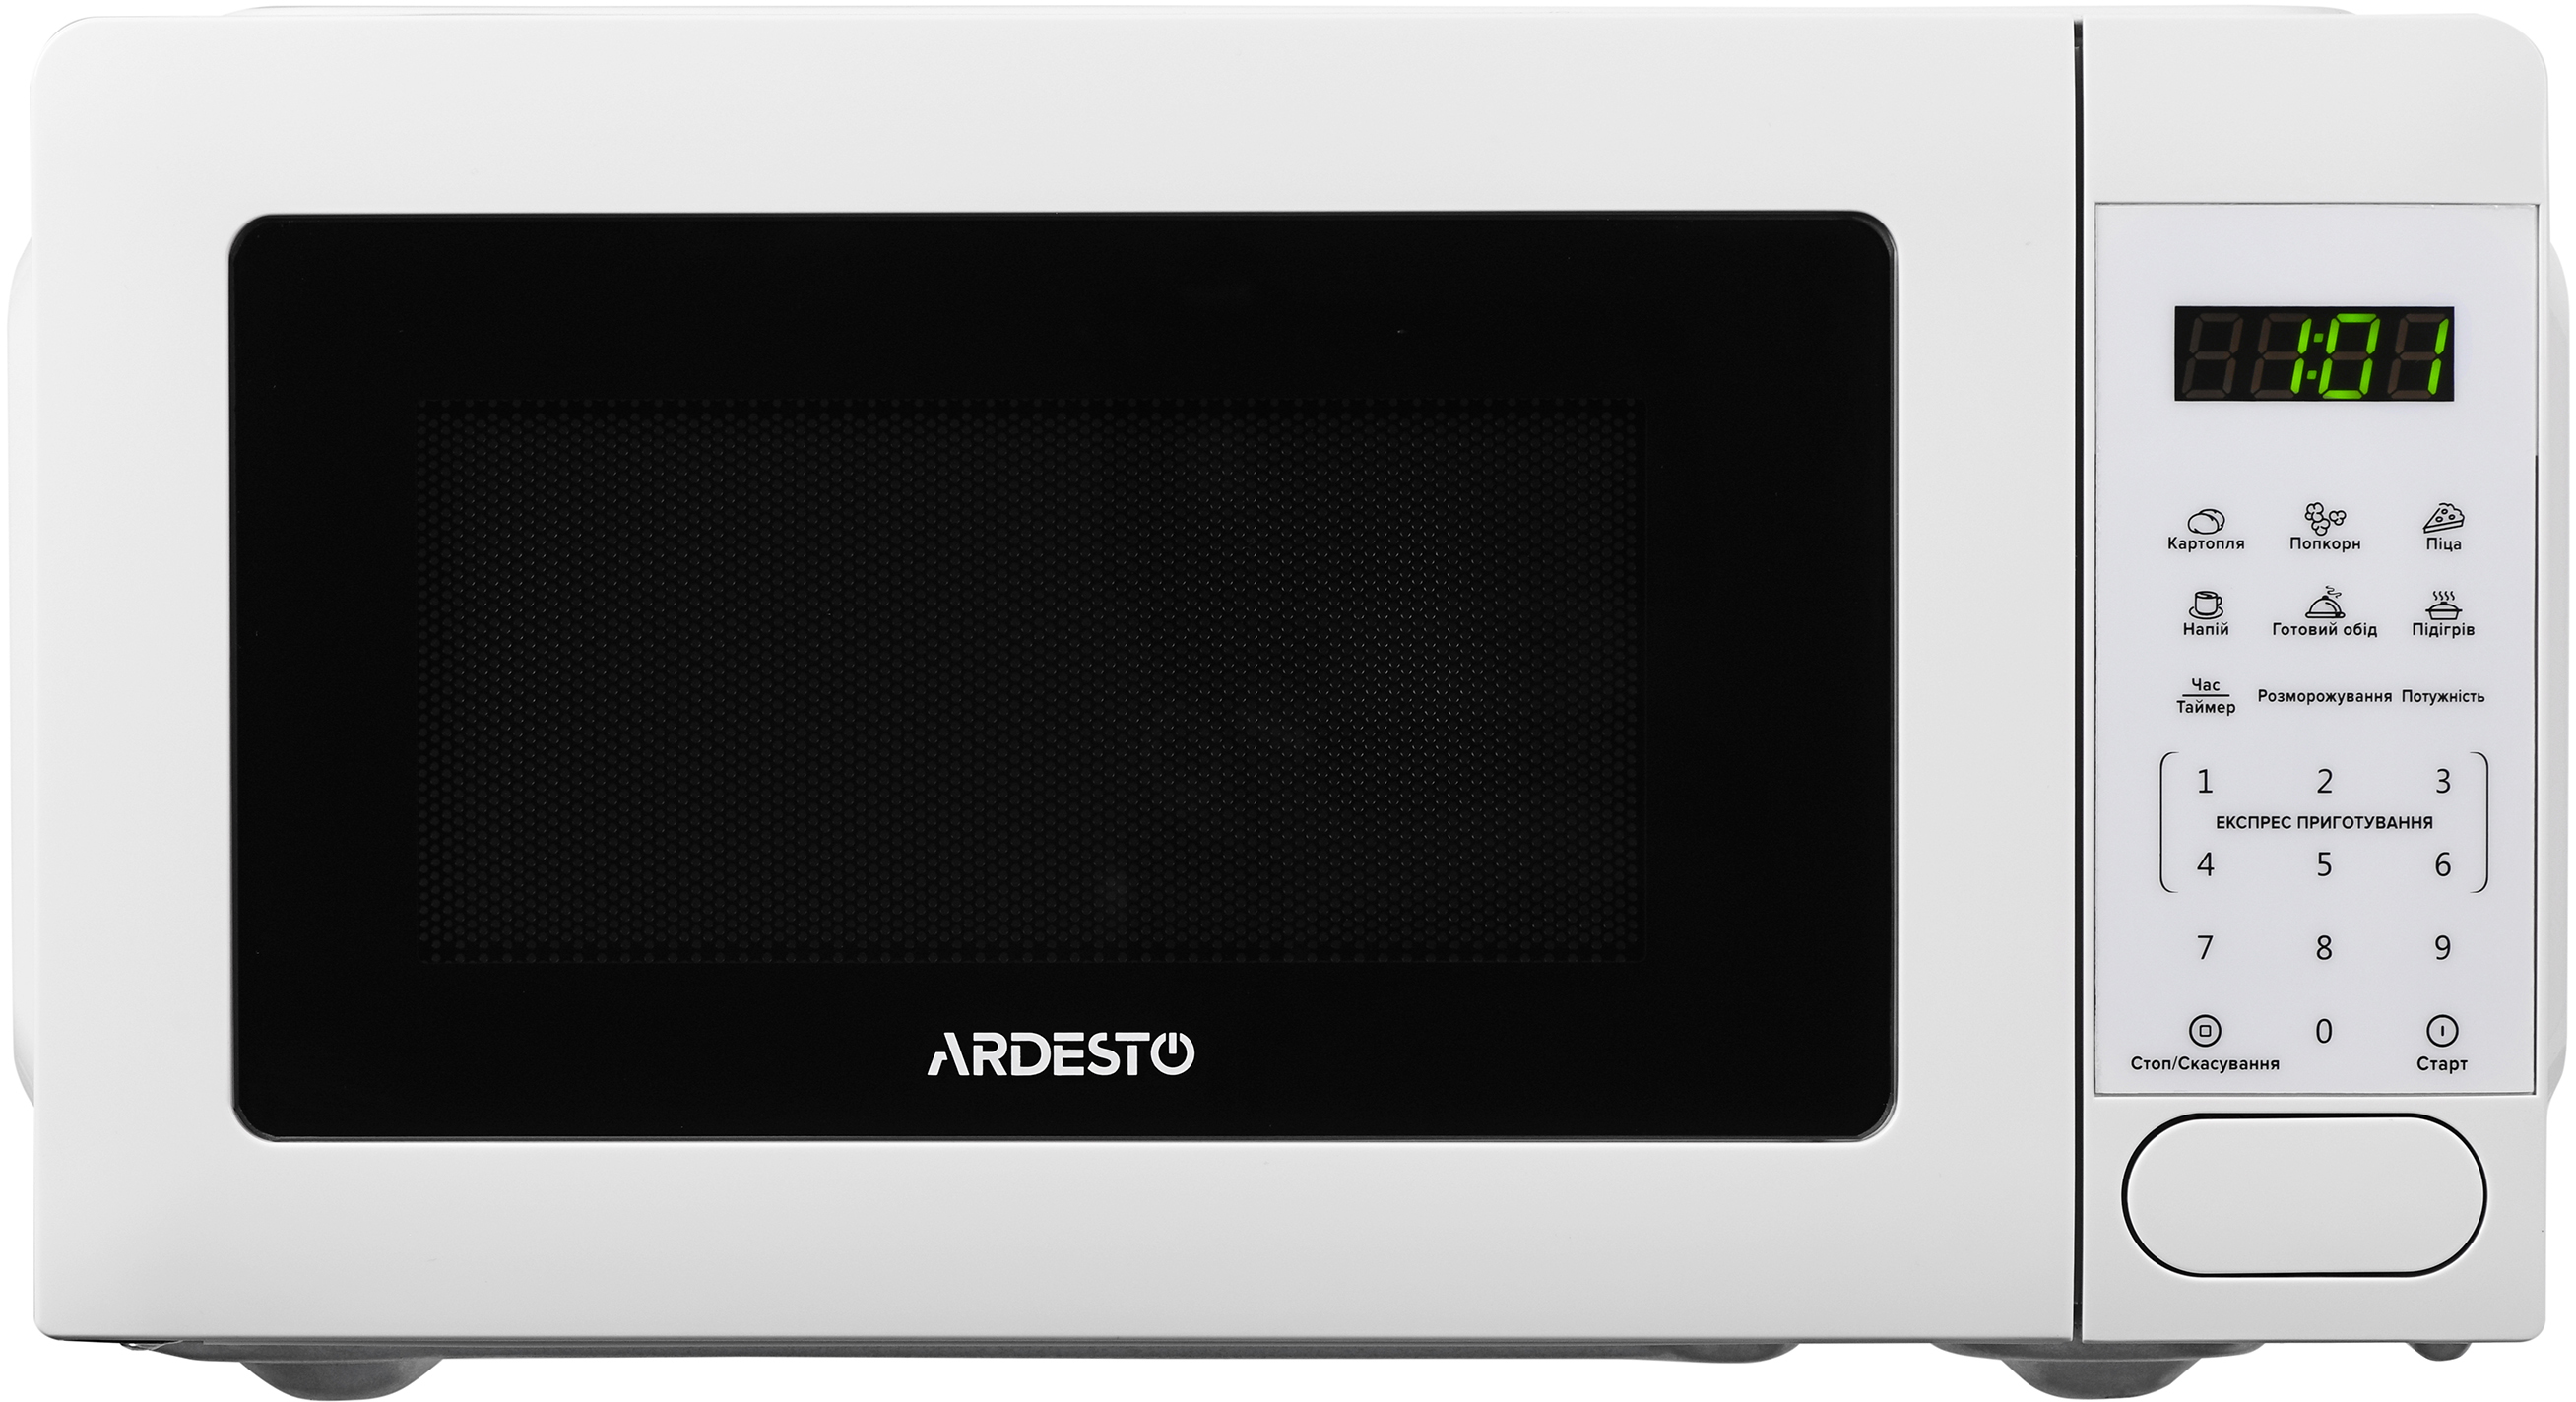 Микроволновая печь Ardesto GO-E722W цена 0.00 грн - фотография 2